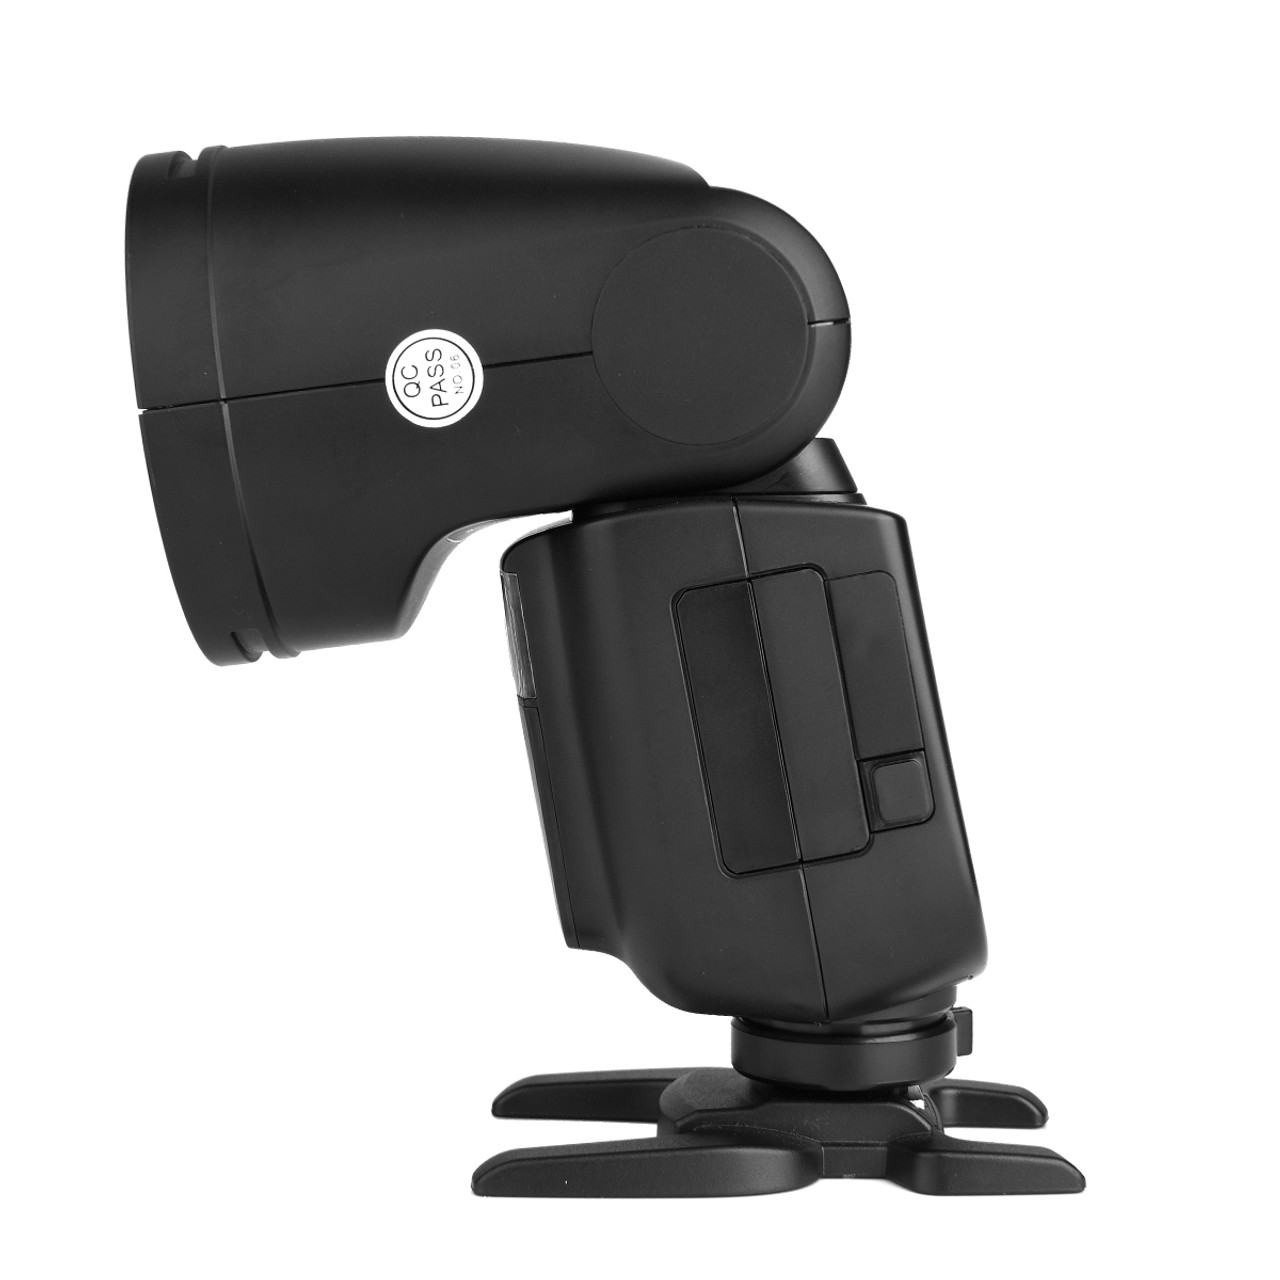 Godox V1 V1-C V1C Round Head Camera Flash for Canon, 2.4G Wireless  Speedlight 1/8000s HSS TTL Speedlite for Canon, 2600mAh Li-ion Battery, 480  Full